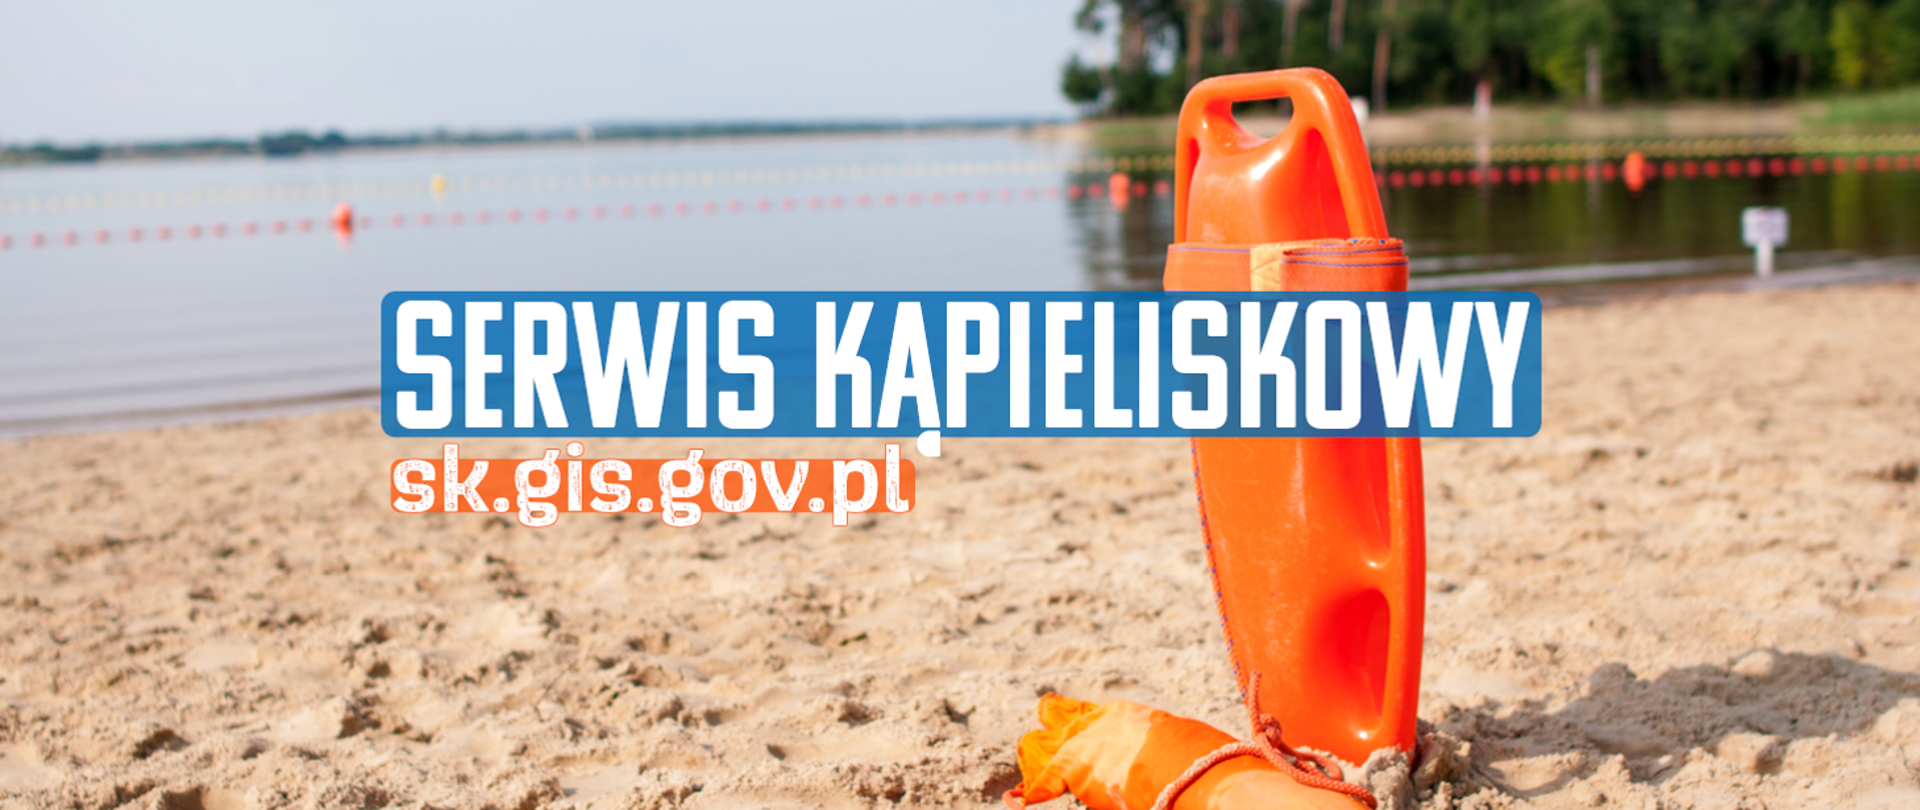 Sprawdź jakość wody w kąpieliskach w Polsce